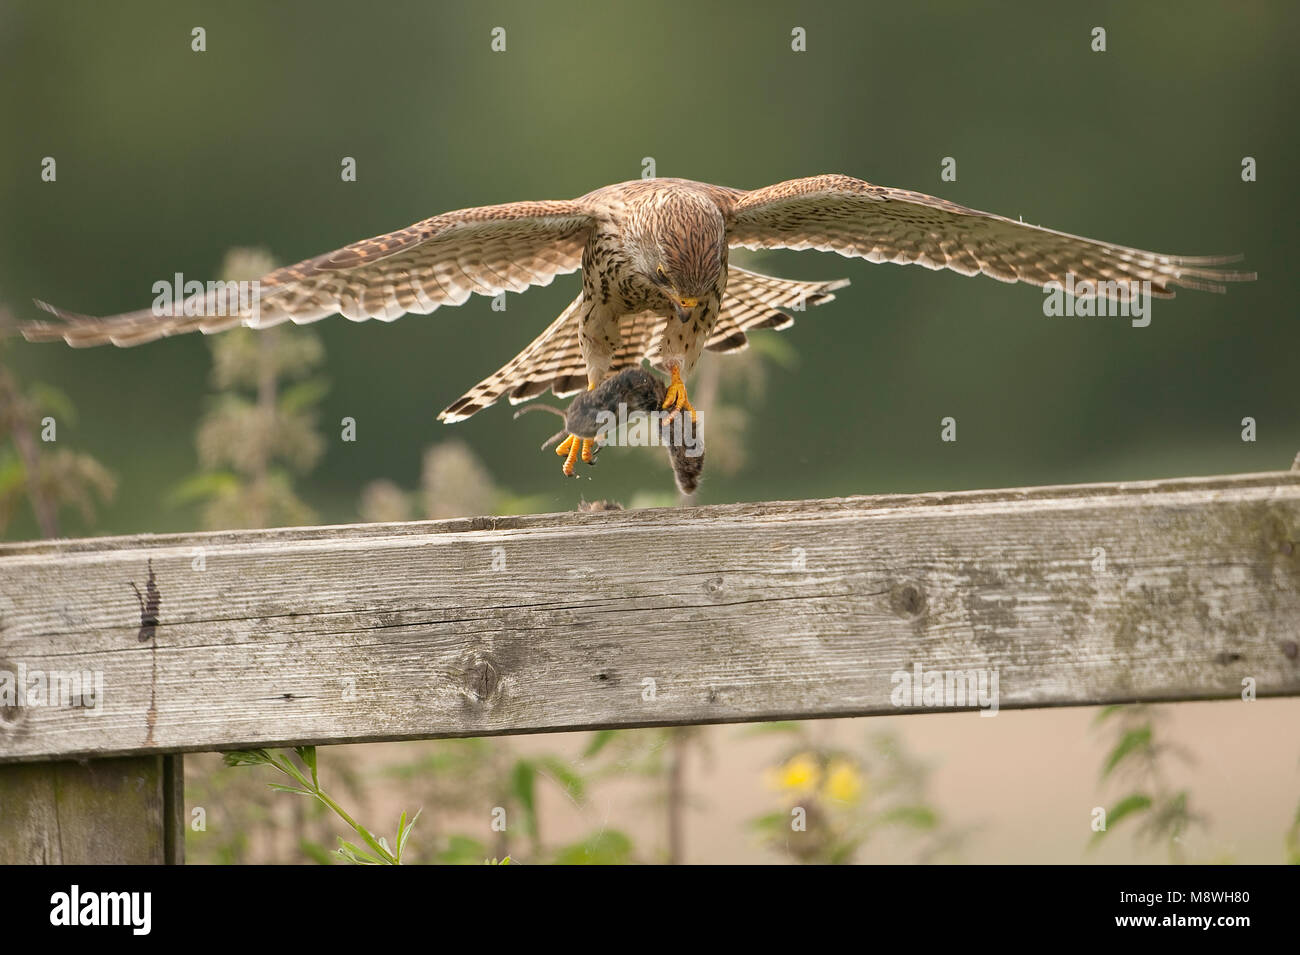 Torenvalk vrouwtje landend op hek rencontré muis, faucon crécerelle femelle atterrissage sur porte avec la souris Banque D'Images